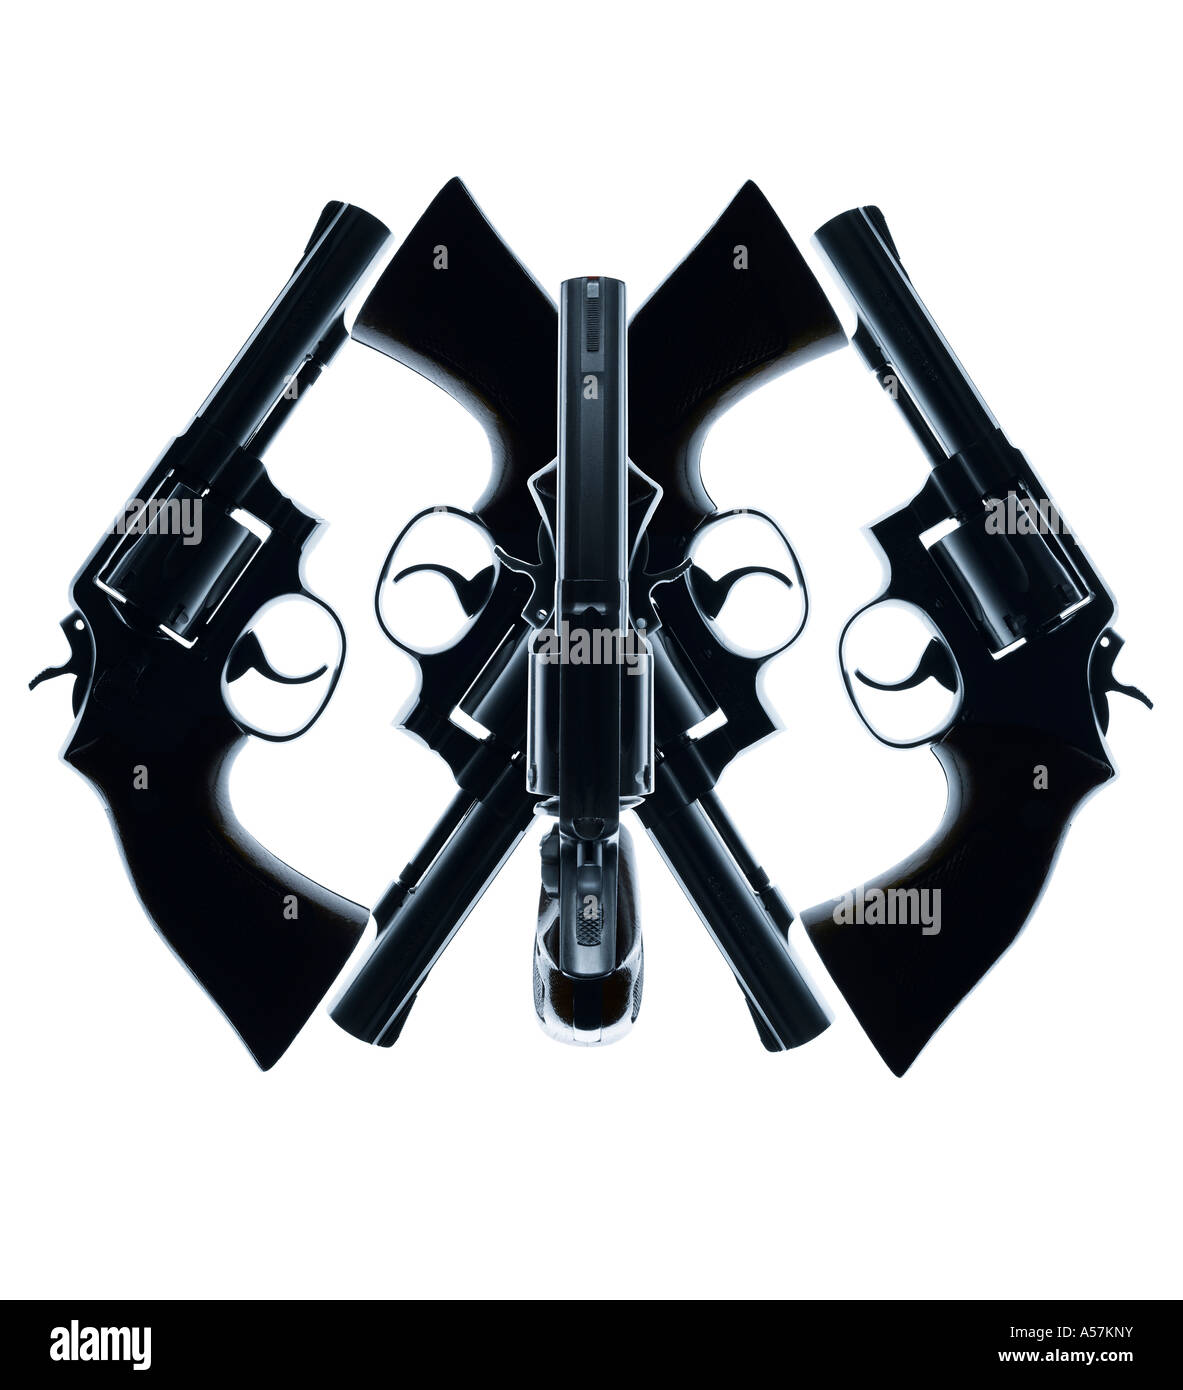 Cinq pistolets pistolets placés de manière créative pour créer un visage ou de forme intéressante Banque D'Images